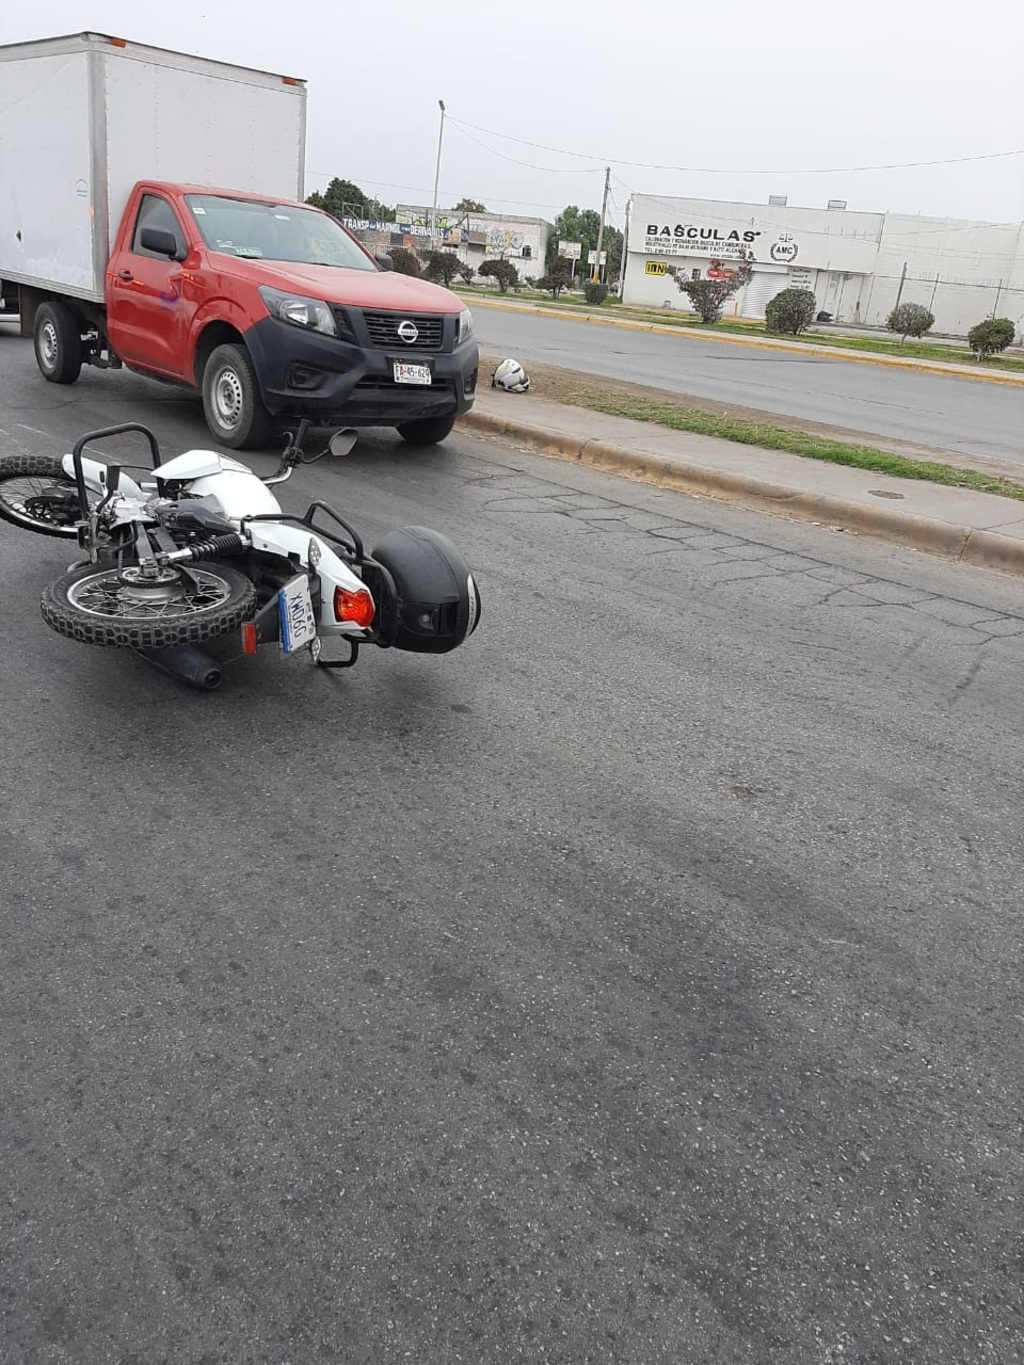 La motocicleta fue impactada por un automóvil de color blanco que se retiró del lugar tras ocasionar el accidente. (EL SIGLO DE TORREÓN)